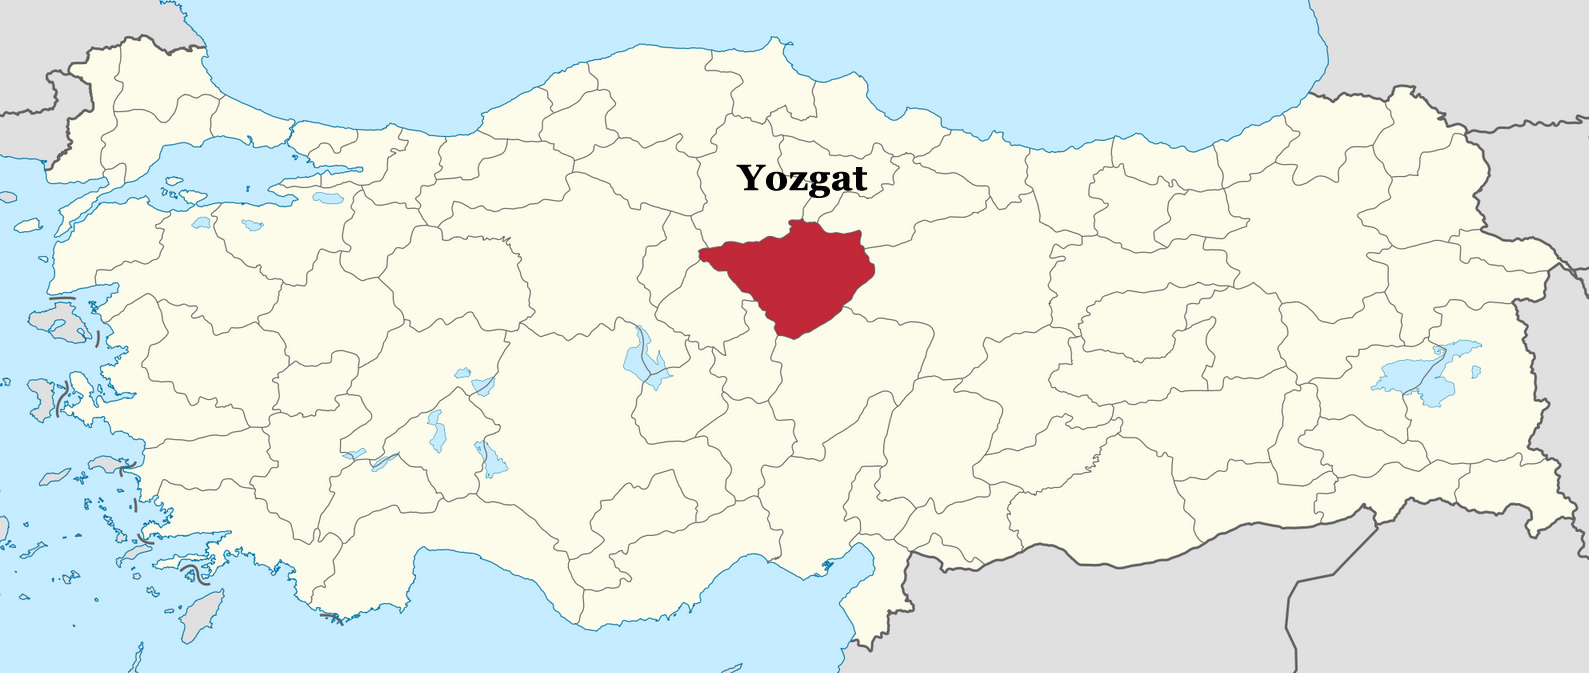 yozgat location map